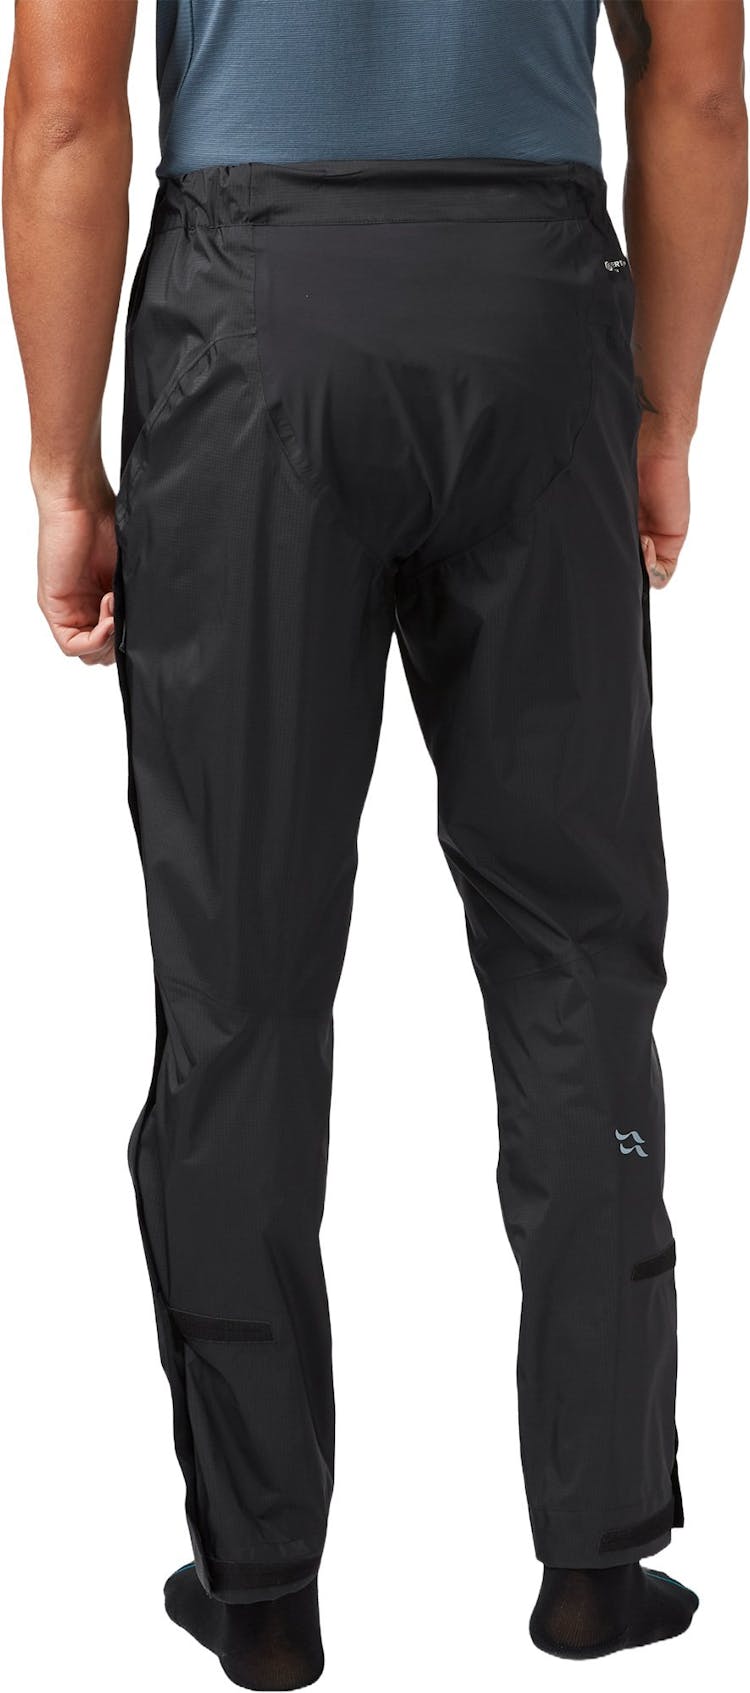 Numéro de l'image de la galerie de produits 9 pour le produit Pantalon imperméable Cinder Downpour - Homme